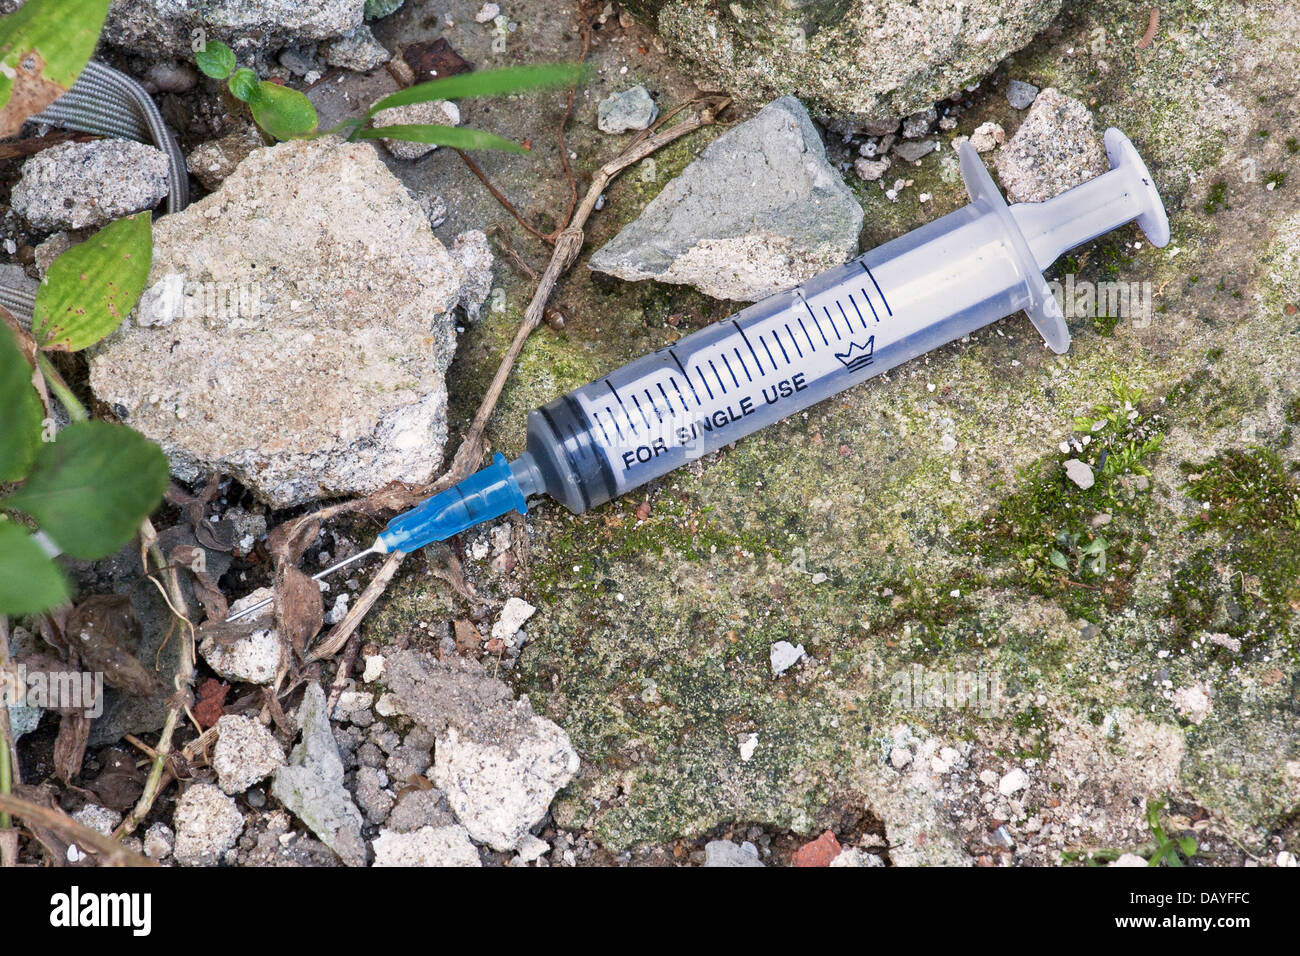 Injektionsspritzen fand auf dem Boden von illegalen Droge verwenden Stockfoto